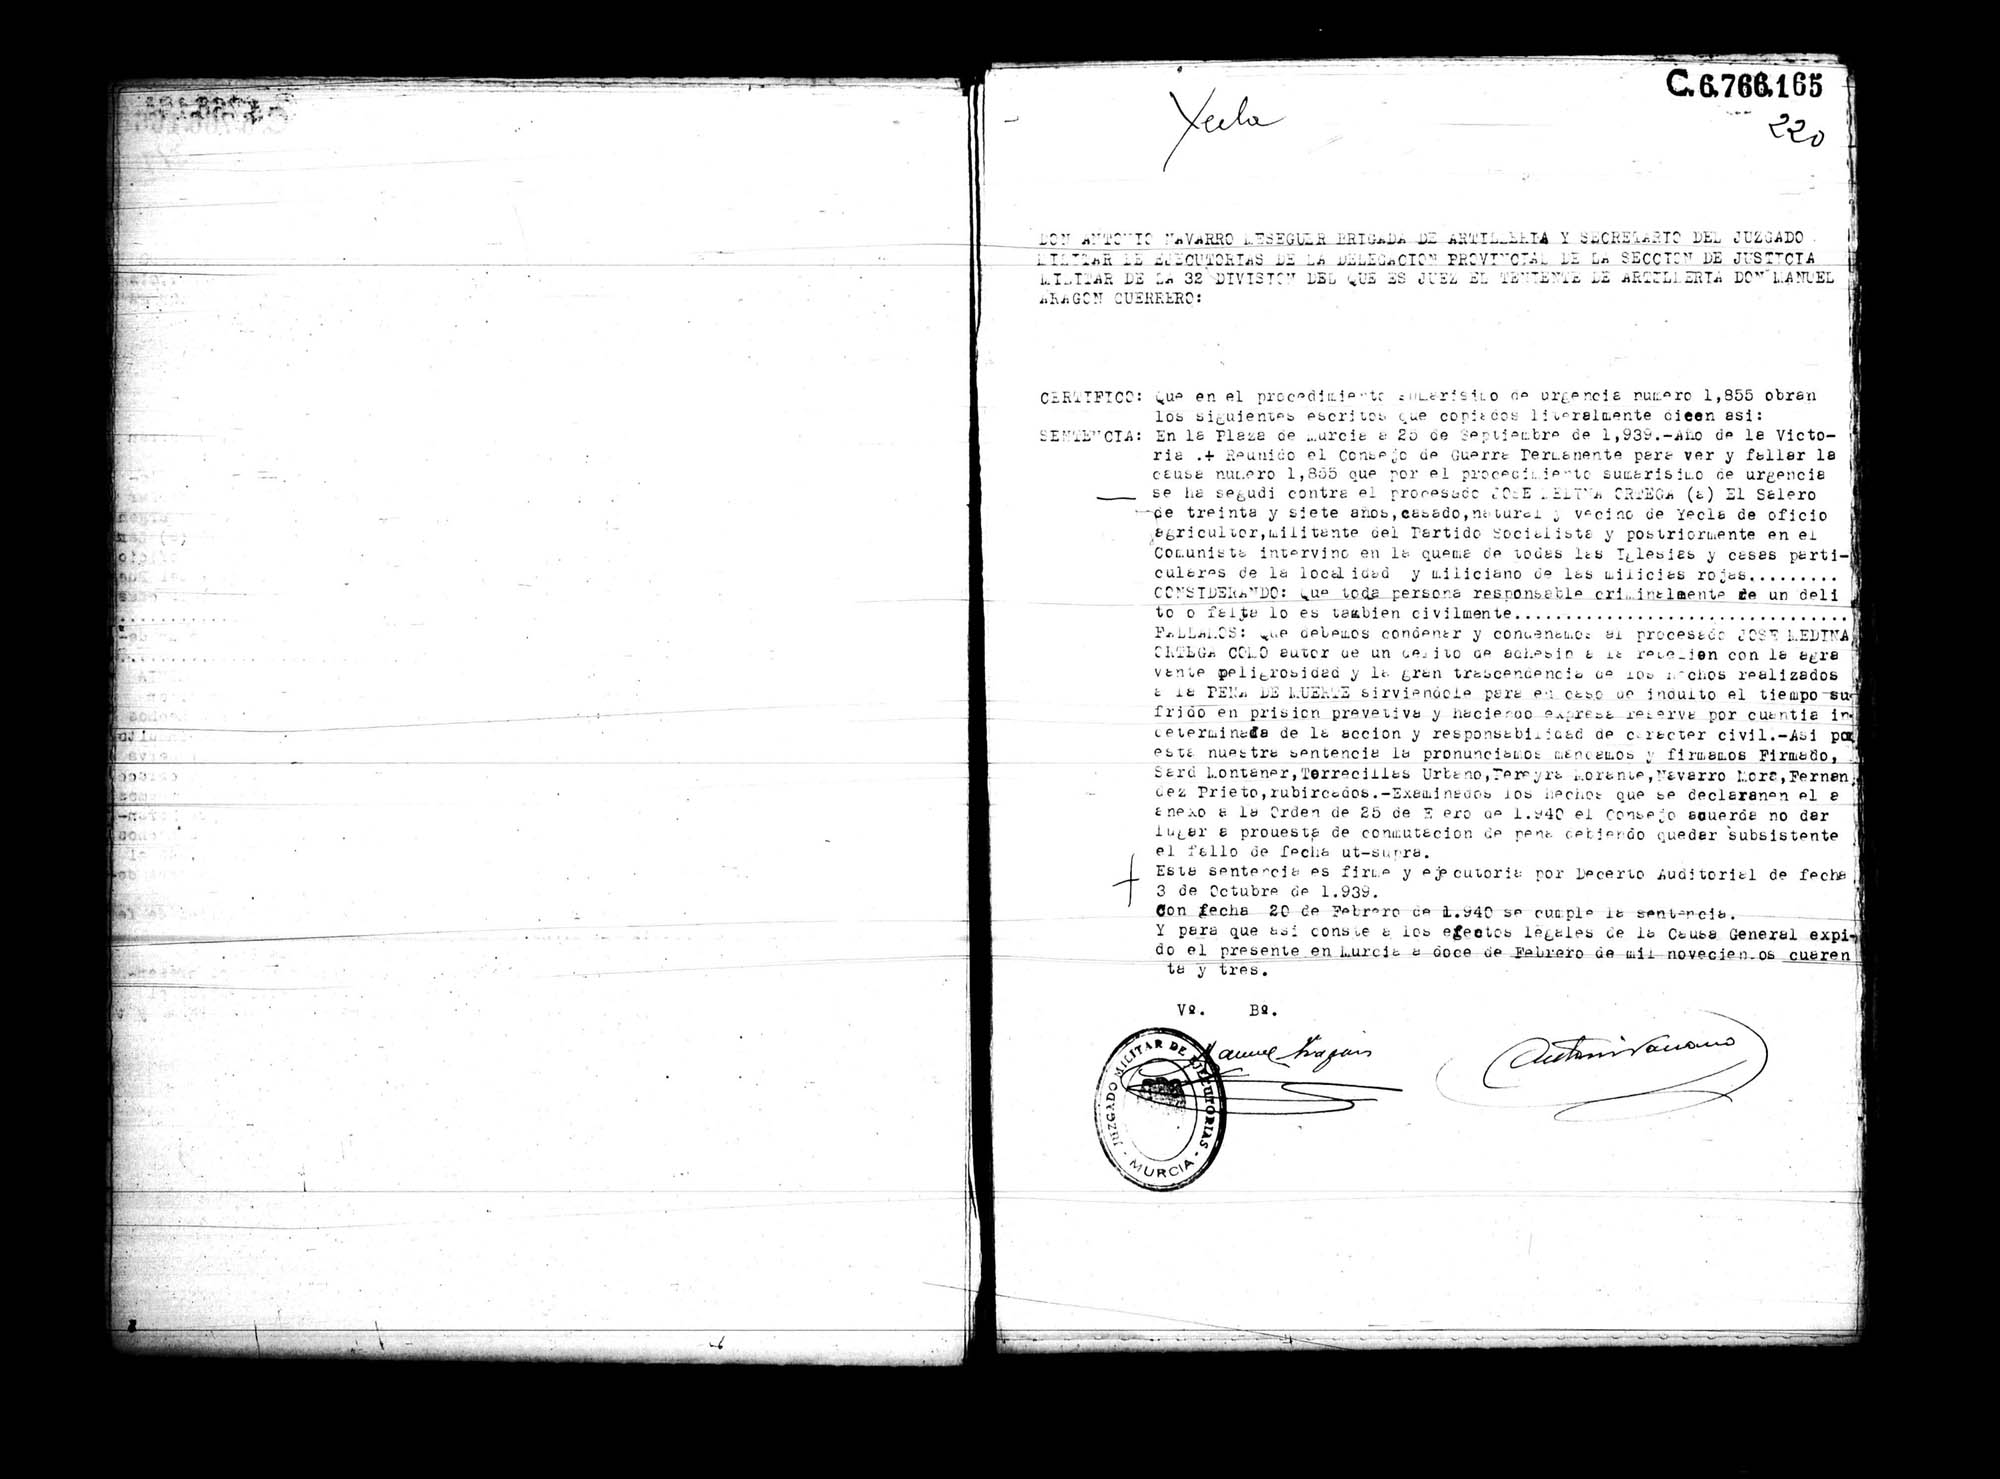 Certificado de la sentencia pronunciada contra José Medina Ortega, causa 1855, el 25 de septiembre de 1939 en Murcia.